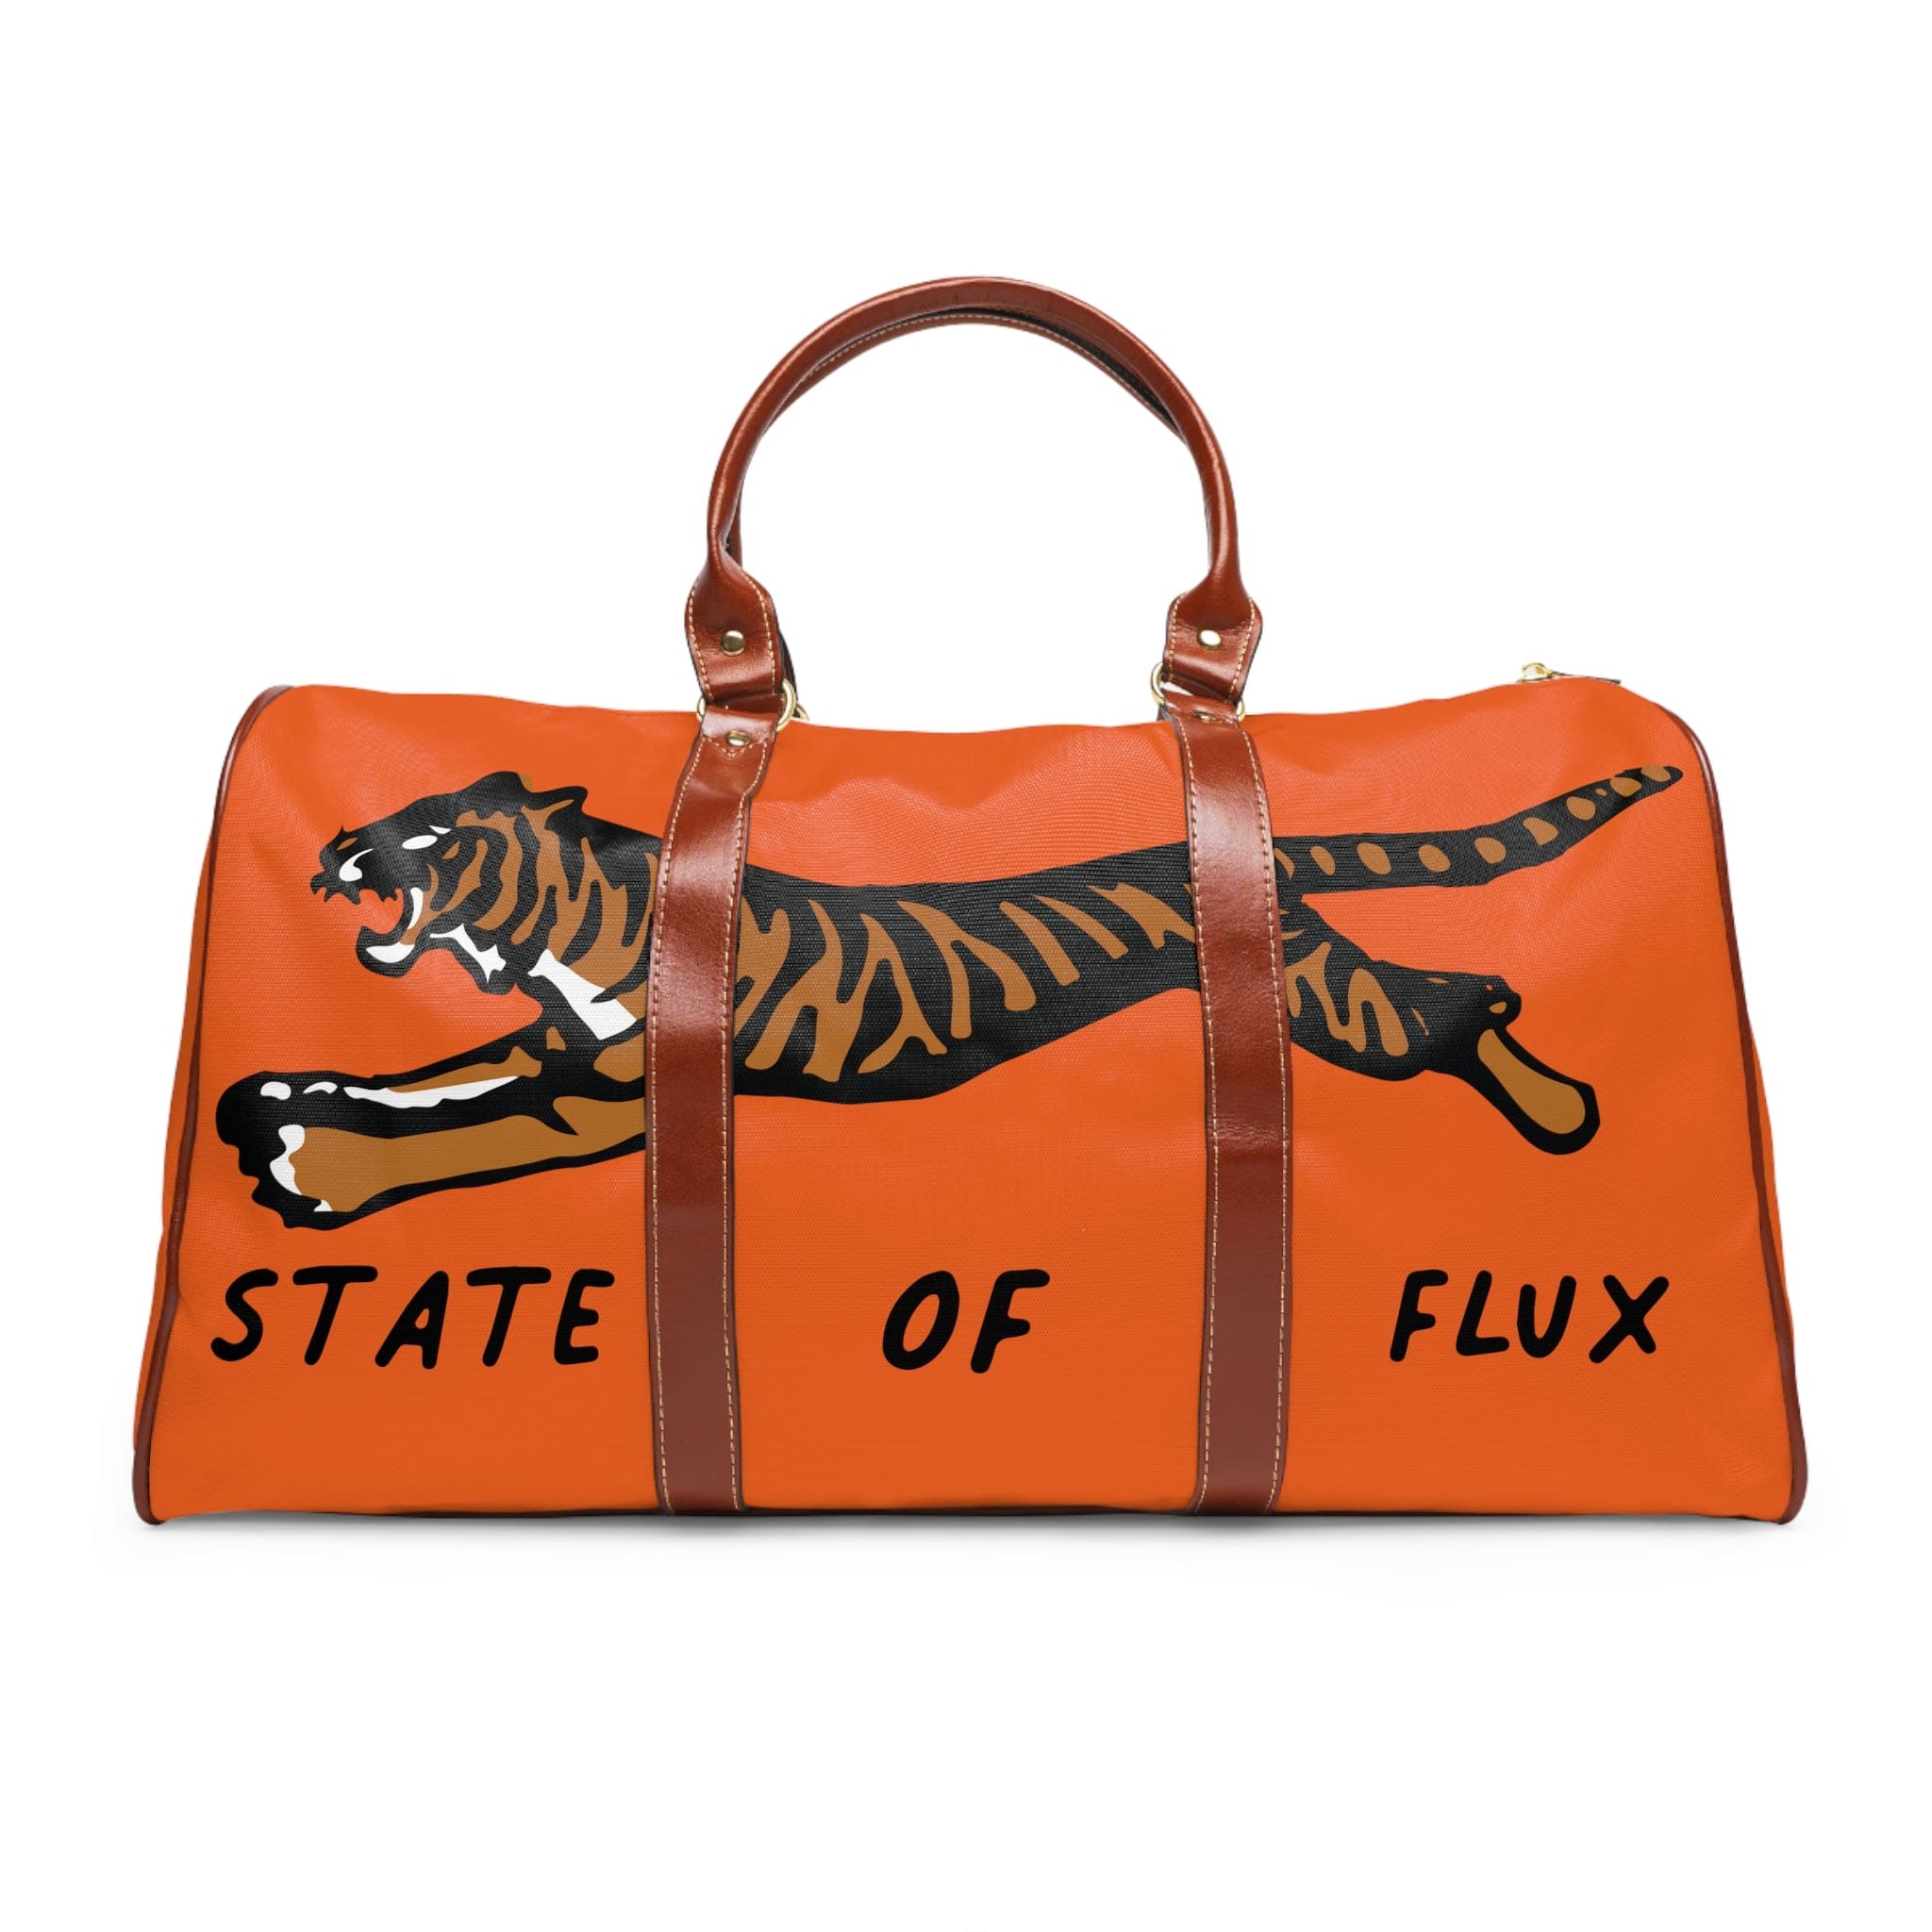 SOF Mojo Weekender Bag in international orange